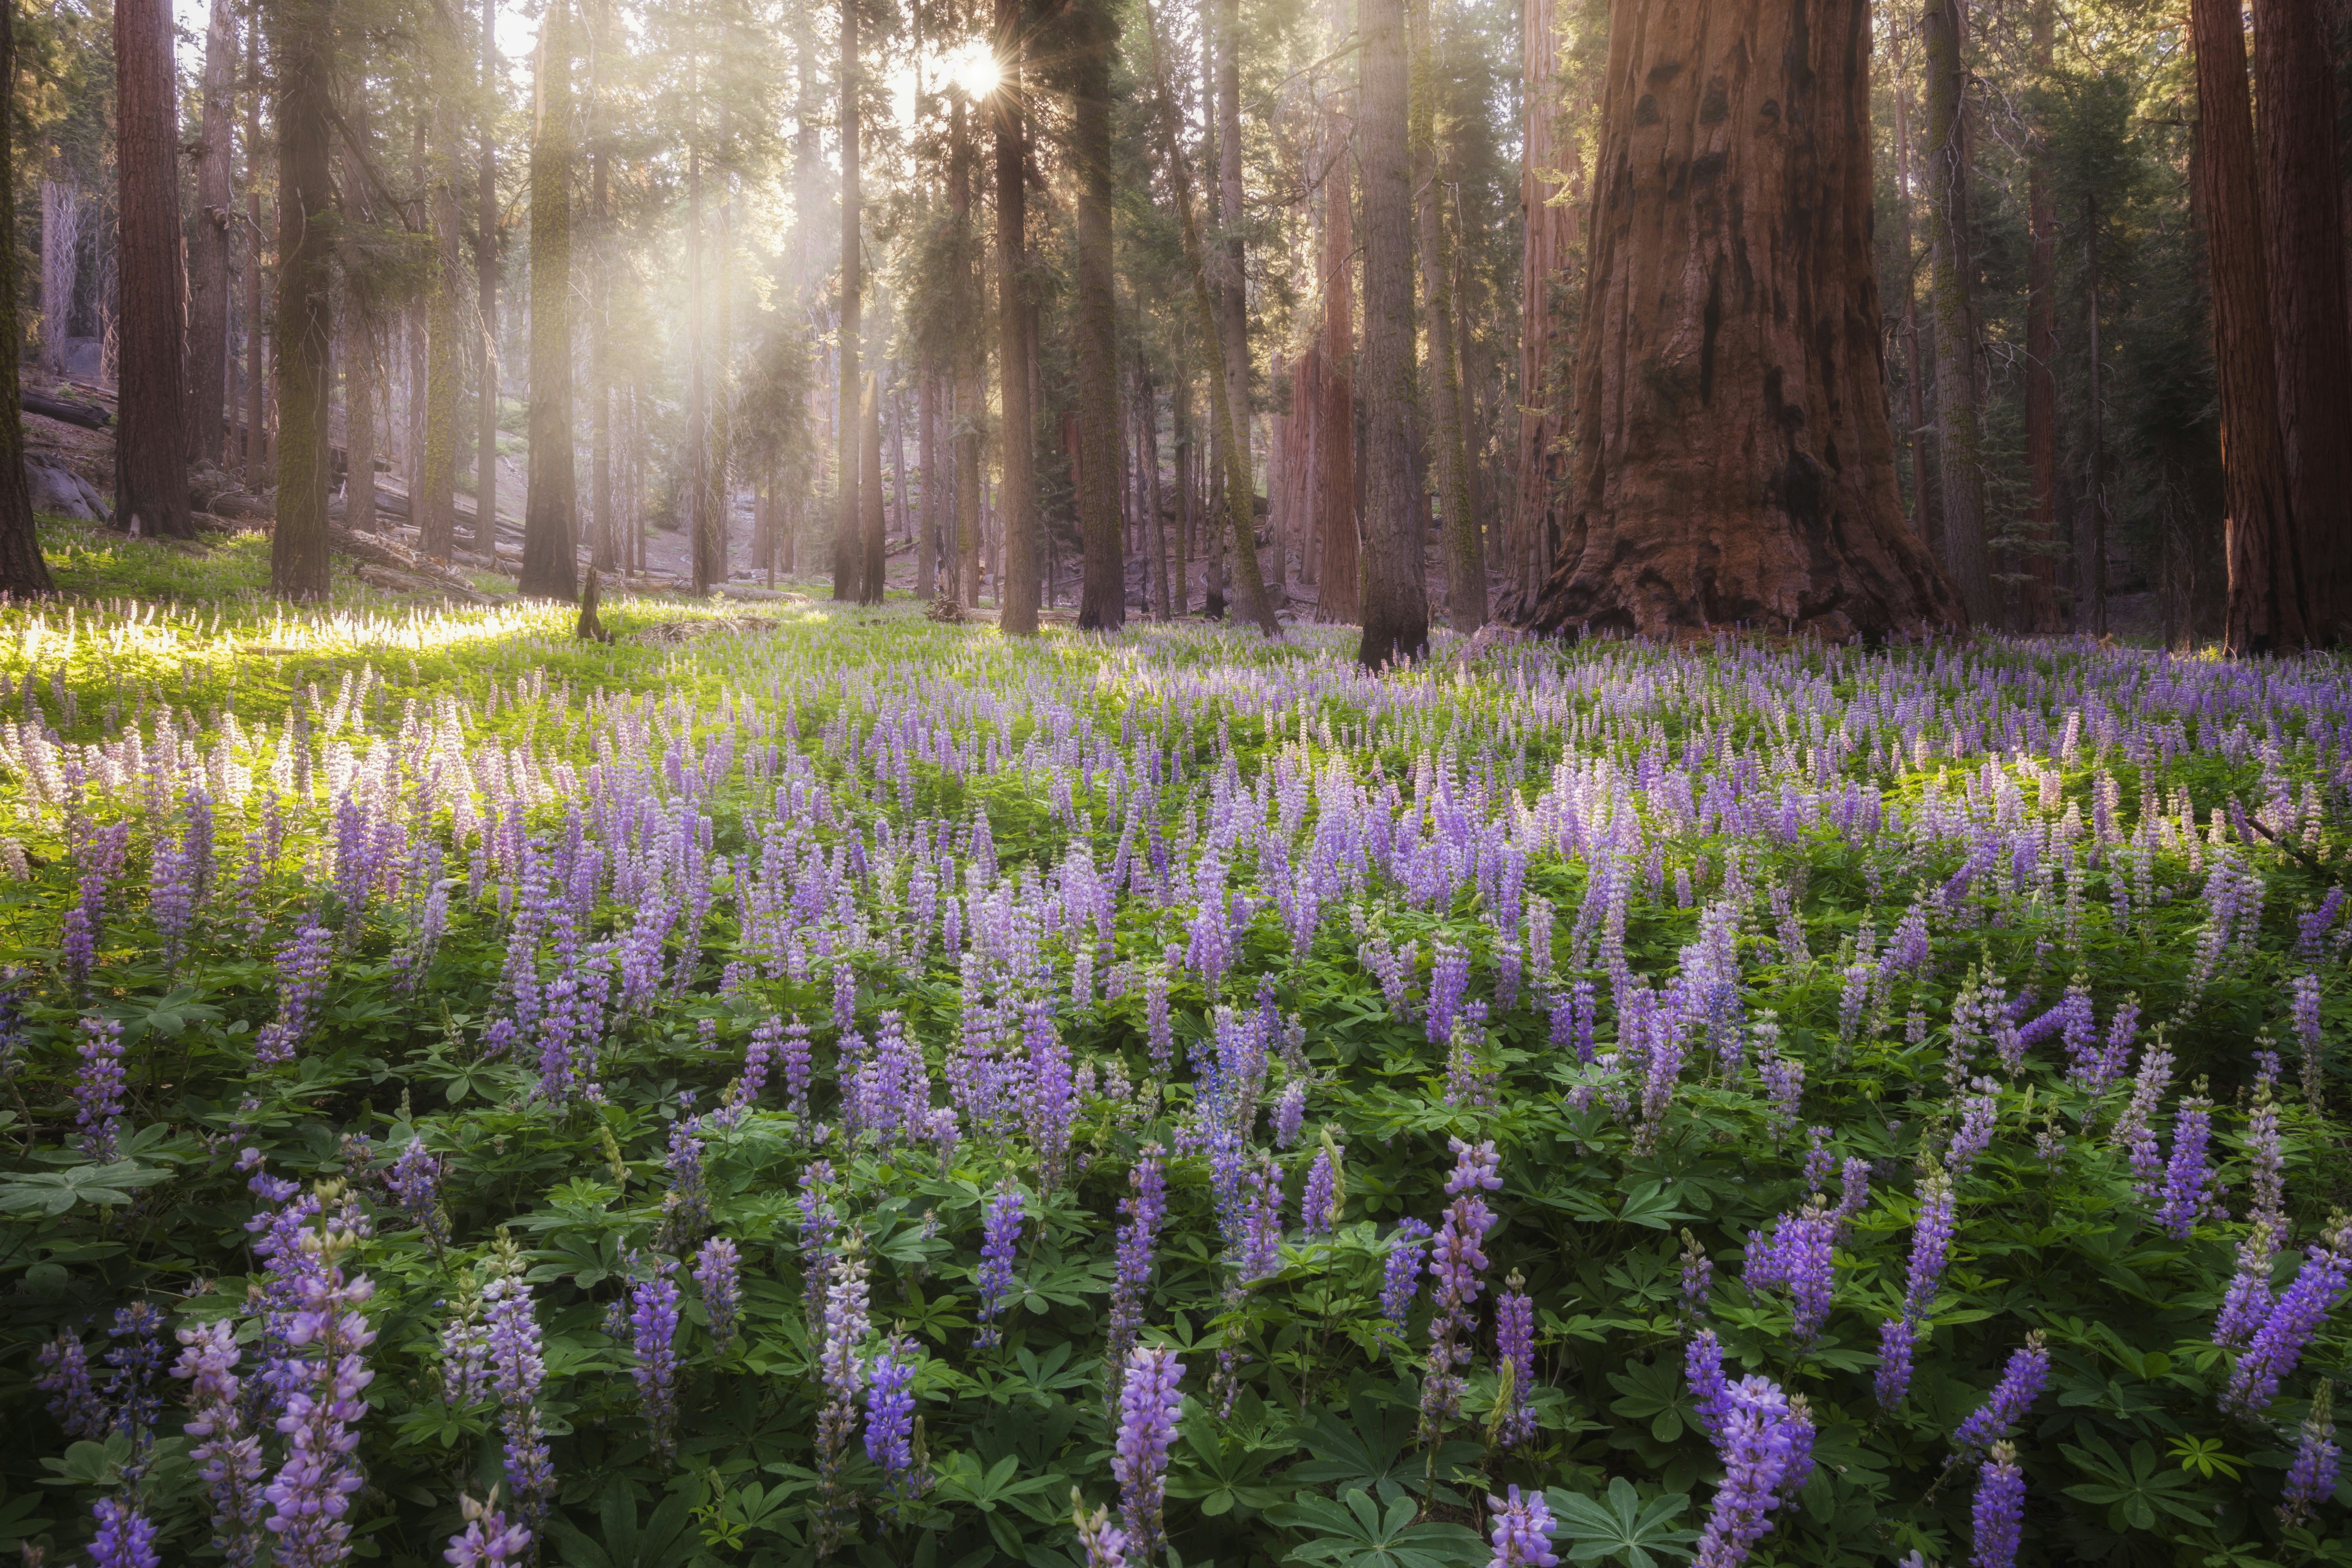 Purple lupines grow in the sunlight between sequoia trees